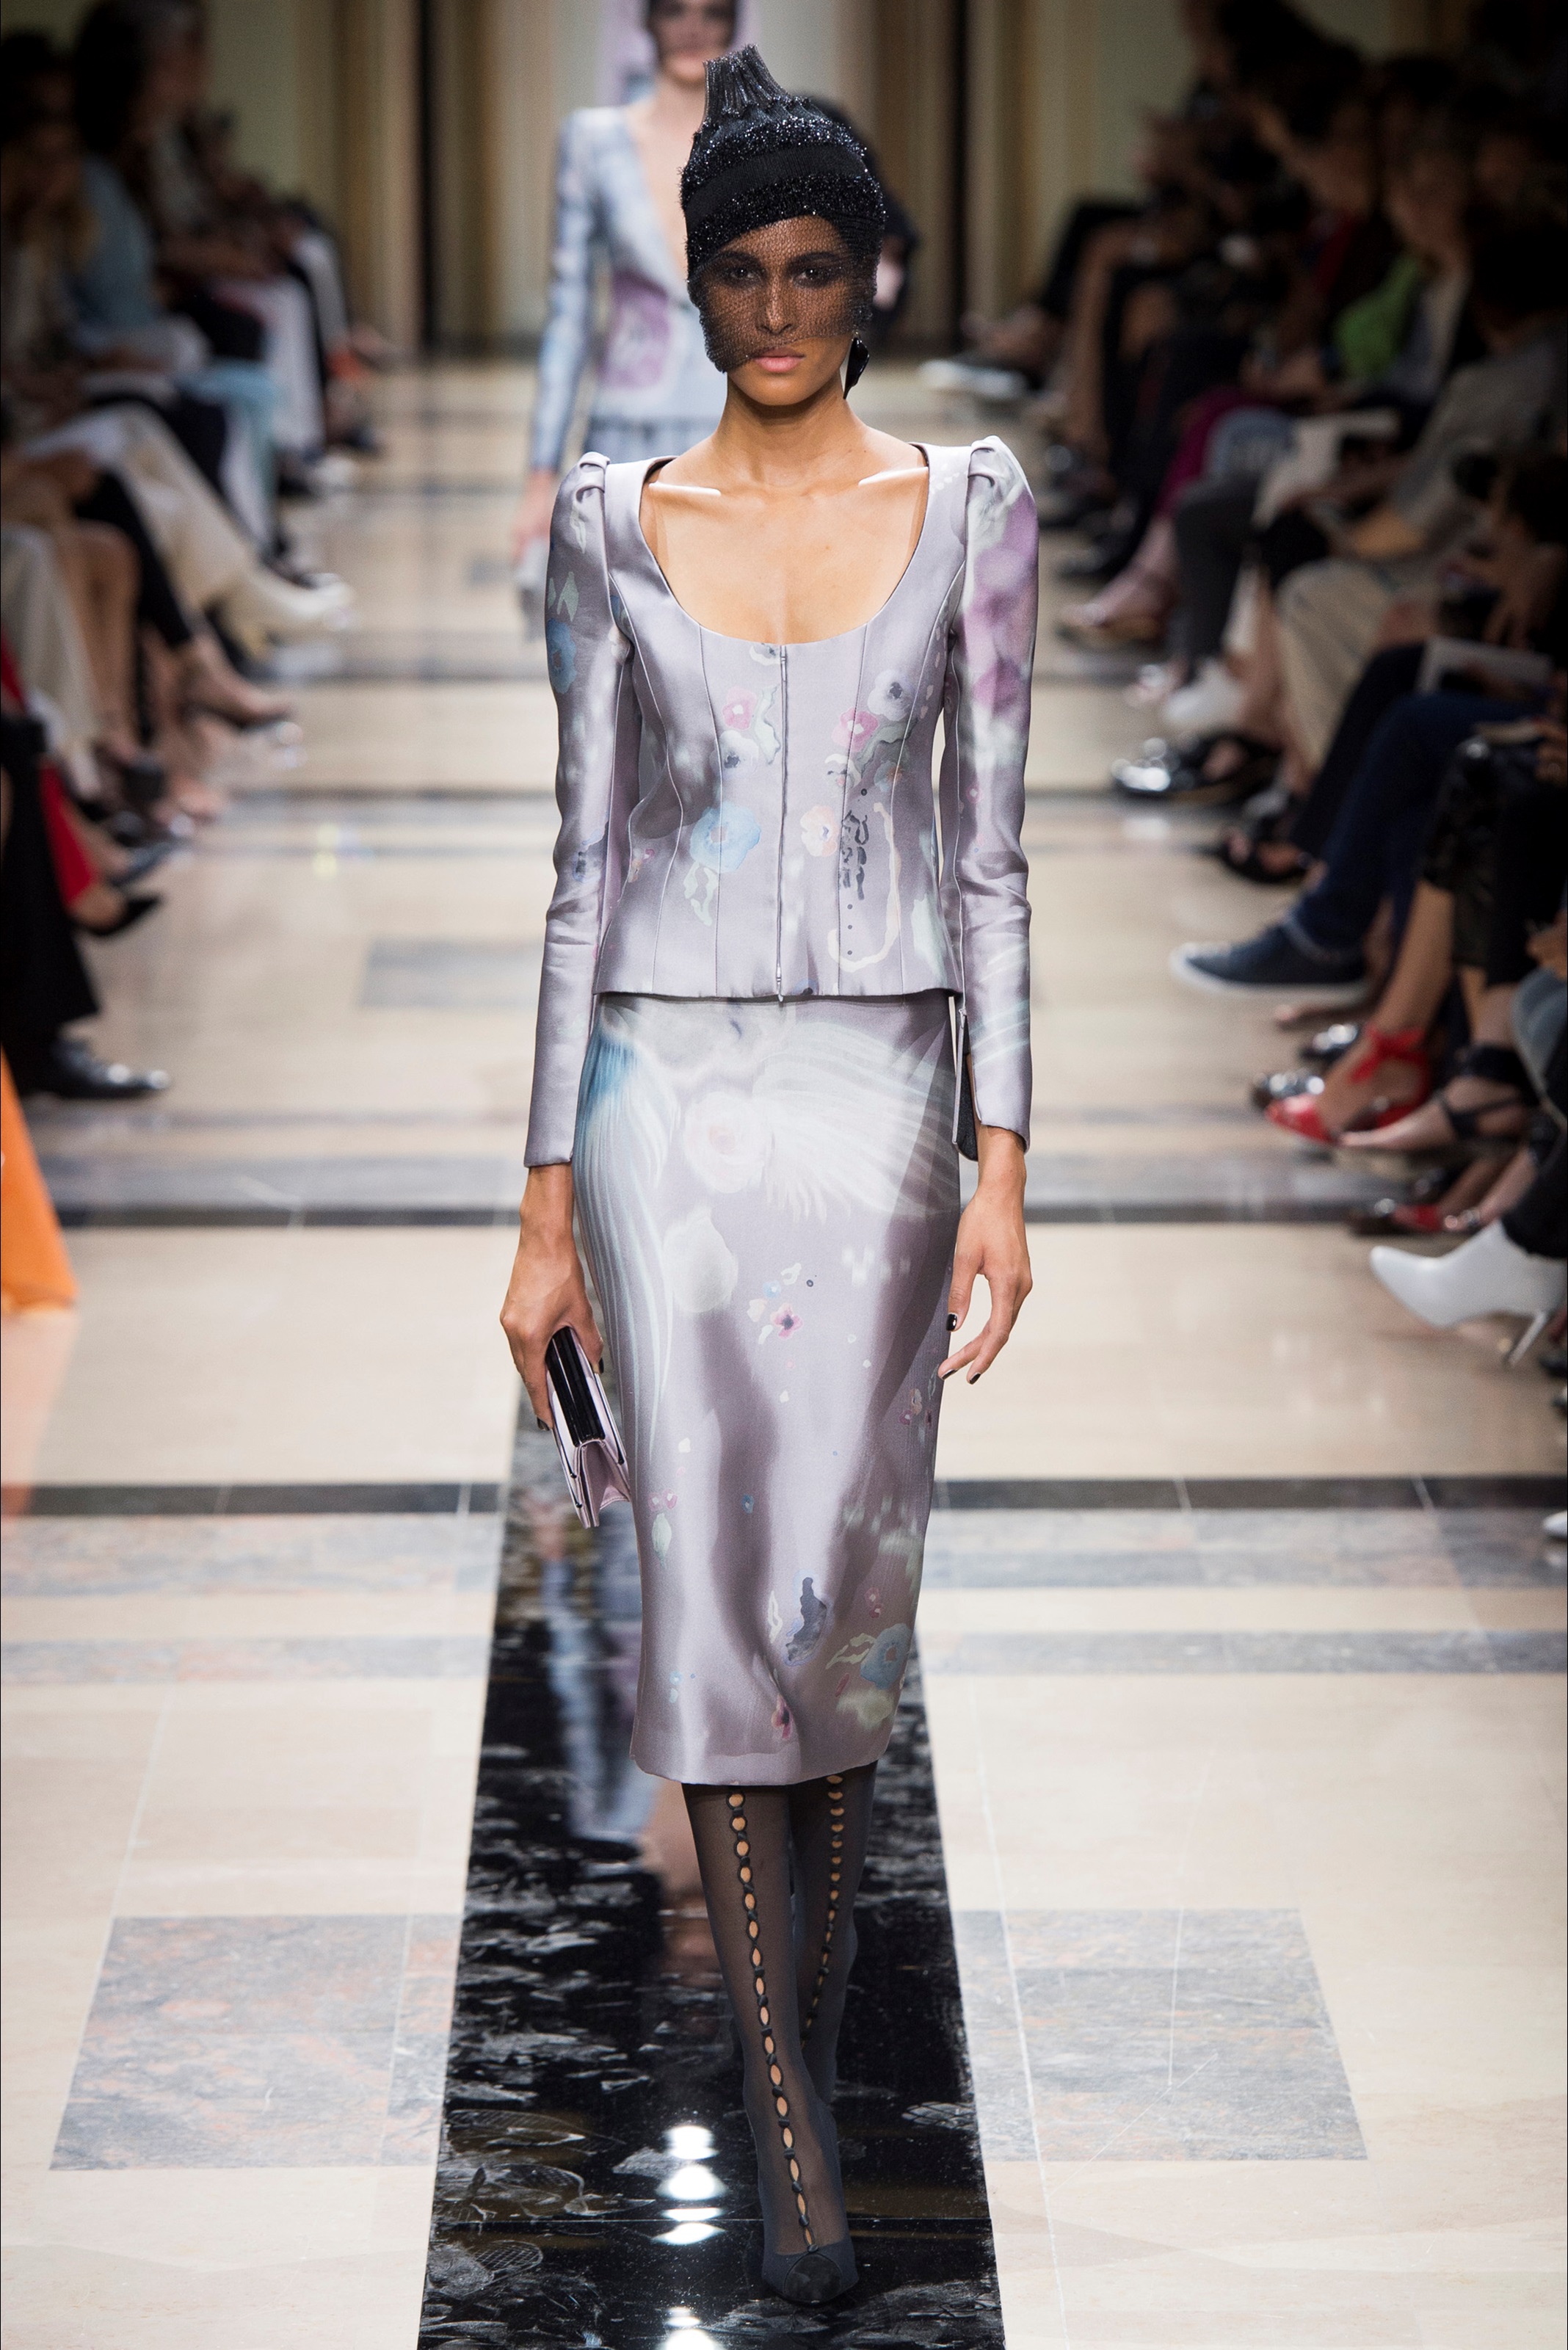 Tutto sulla sfilata autunno inverno 2020/2021 di Giorgio Armani alla Milano Fashion Week | iO Donna